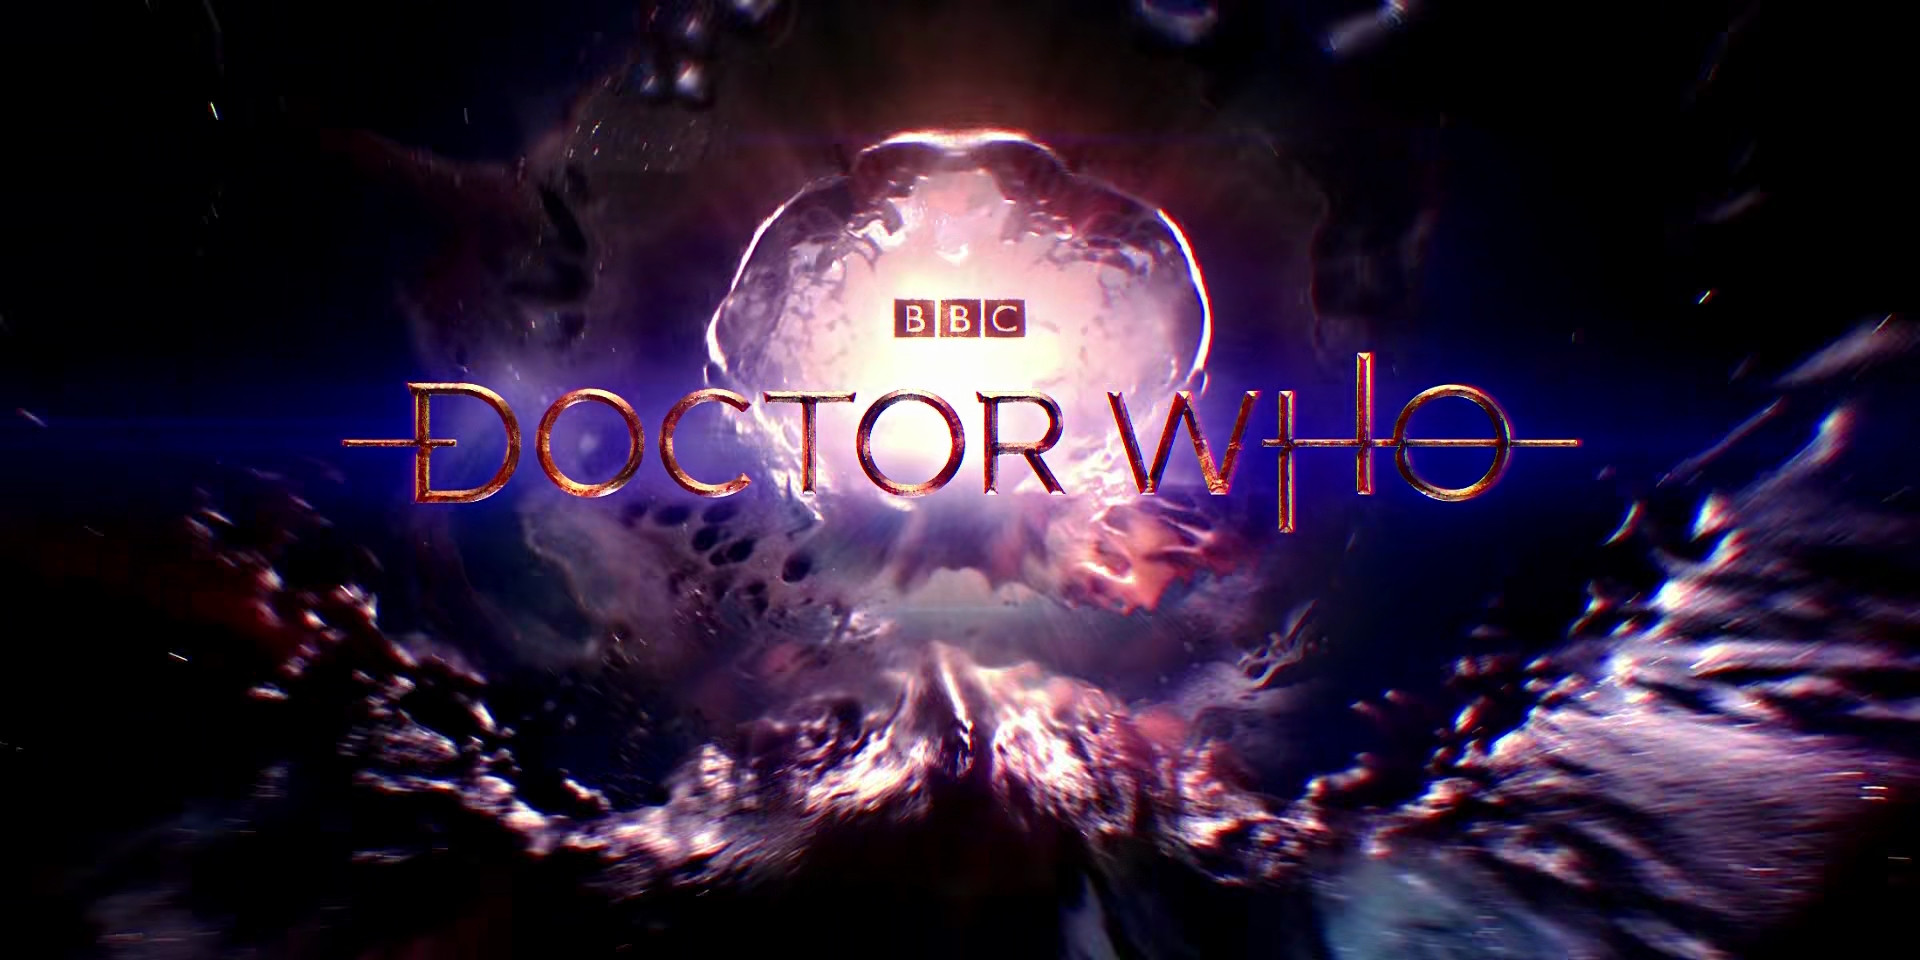 Dr Who Season 13 2005 BBC 1080p BluRay MKV x265 AC3 Web DL 5 01GB